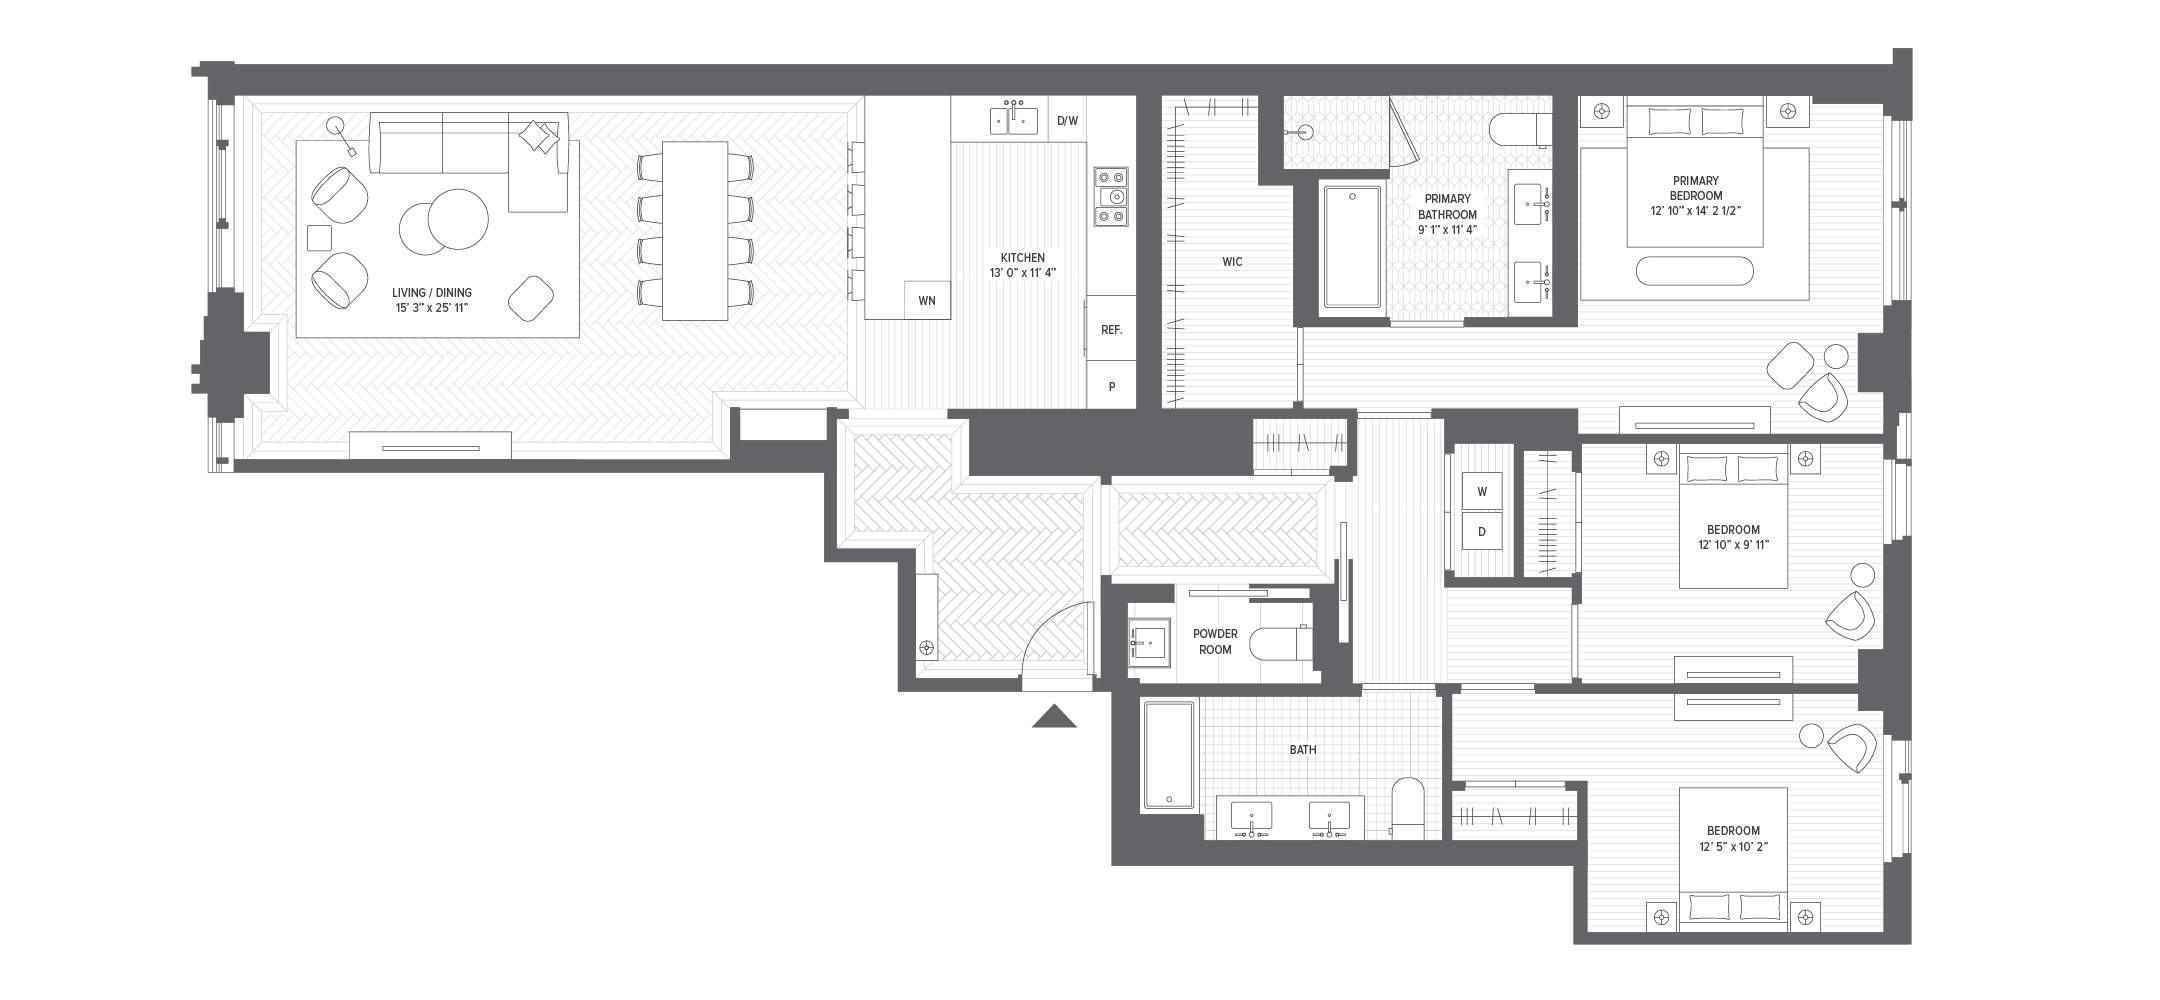 Unit 3B floorplan